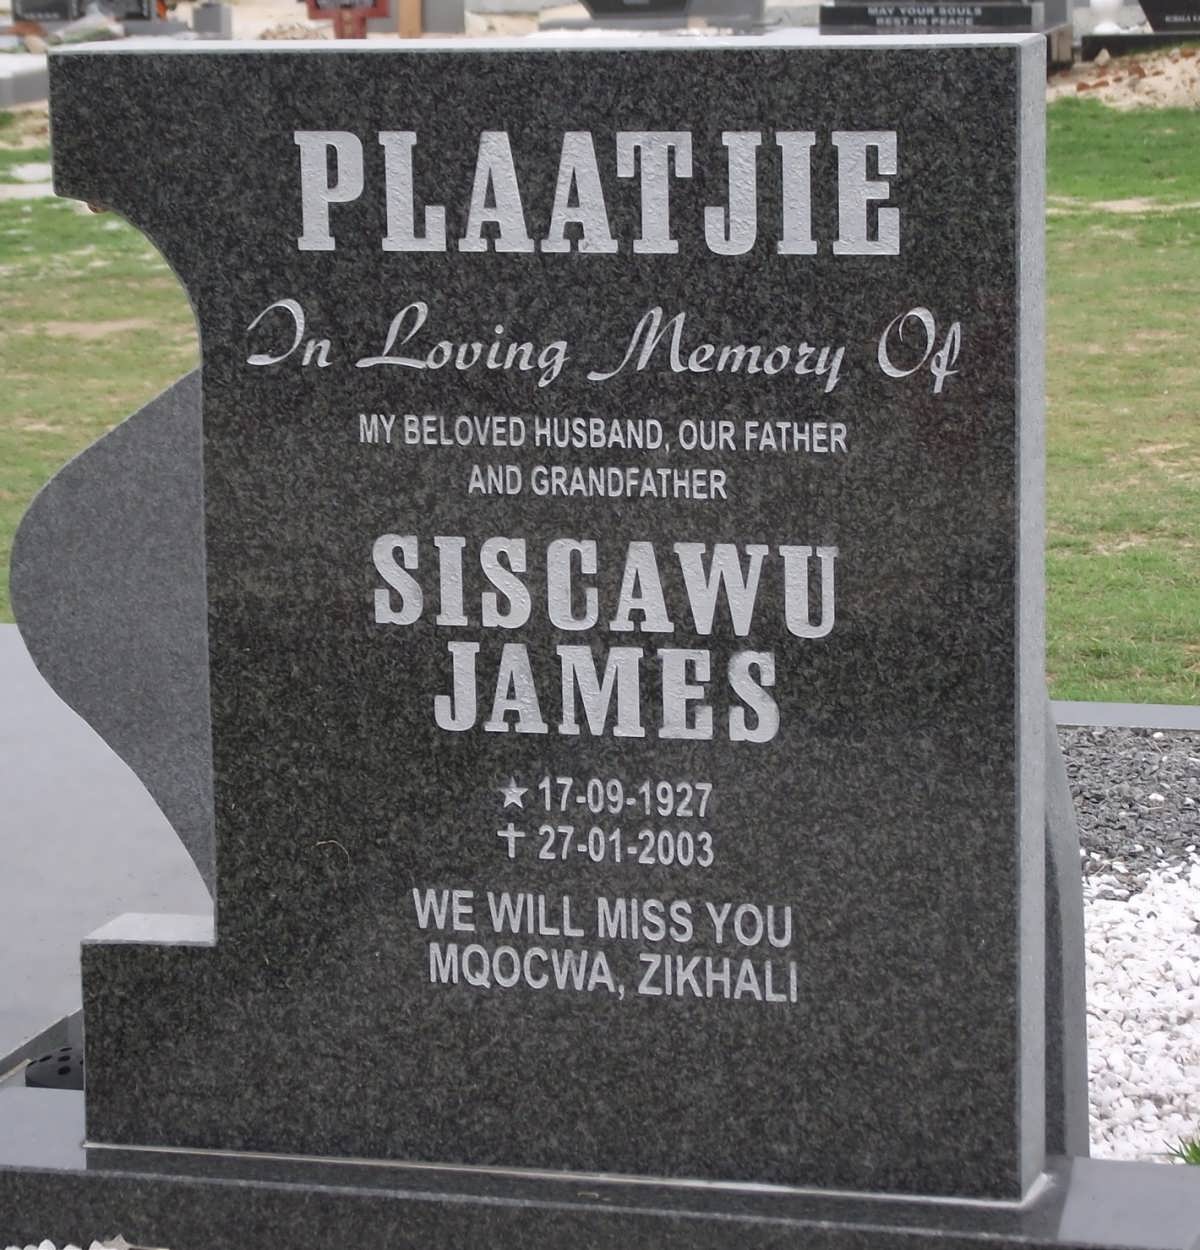 PLAATJIE Siscawu James 1927-2003